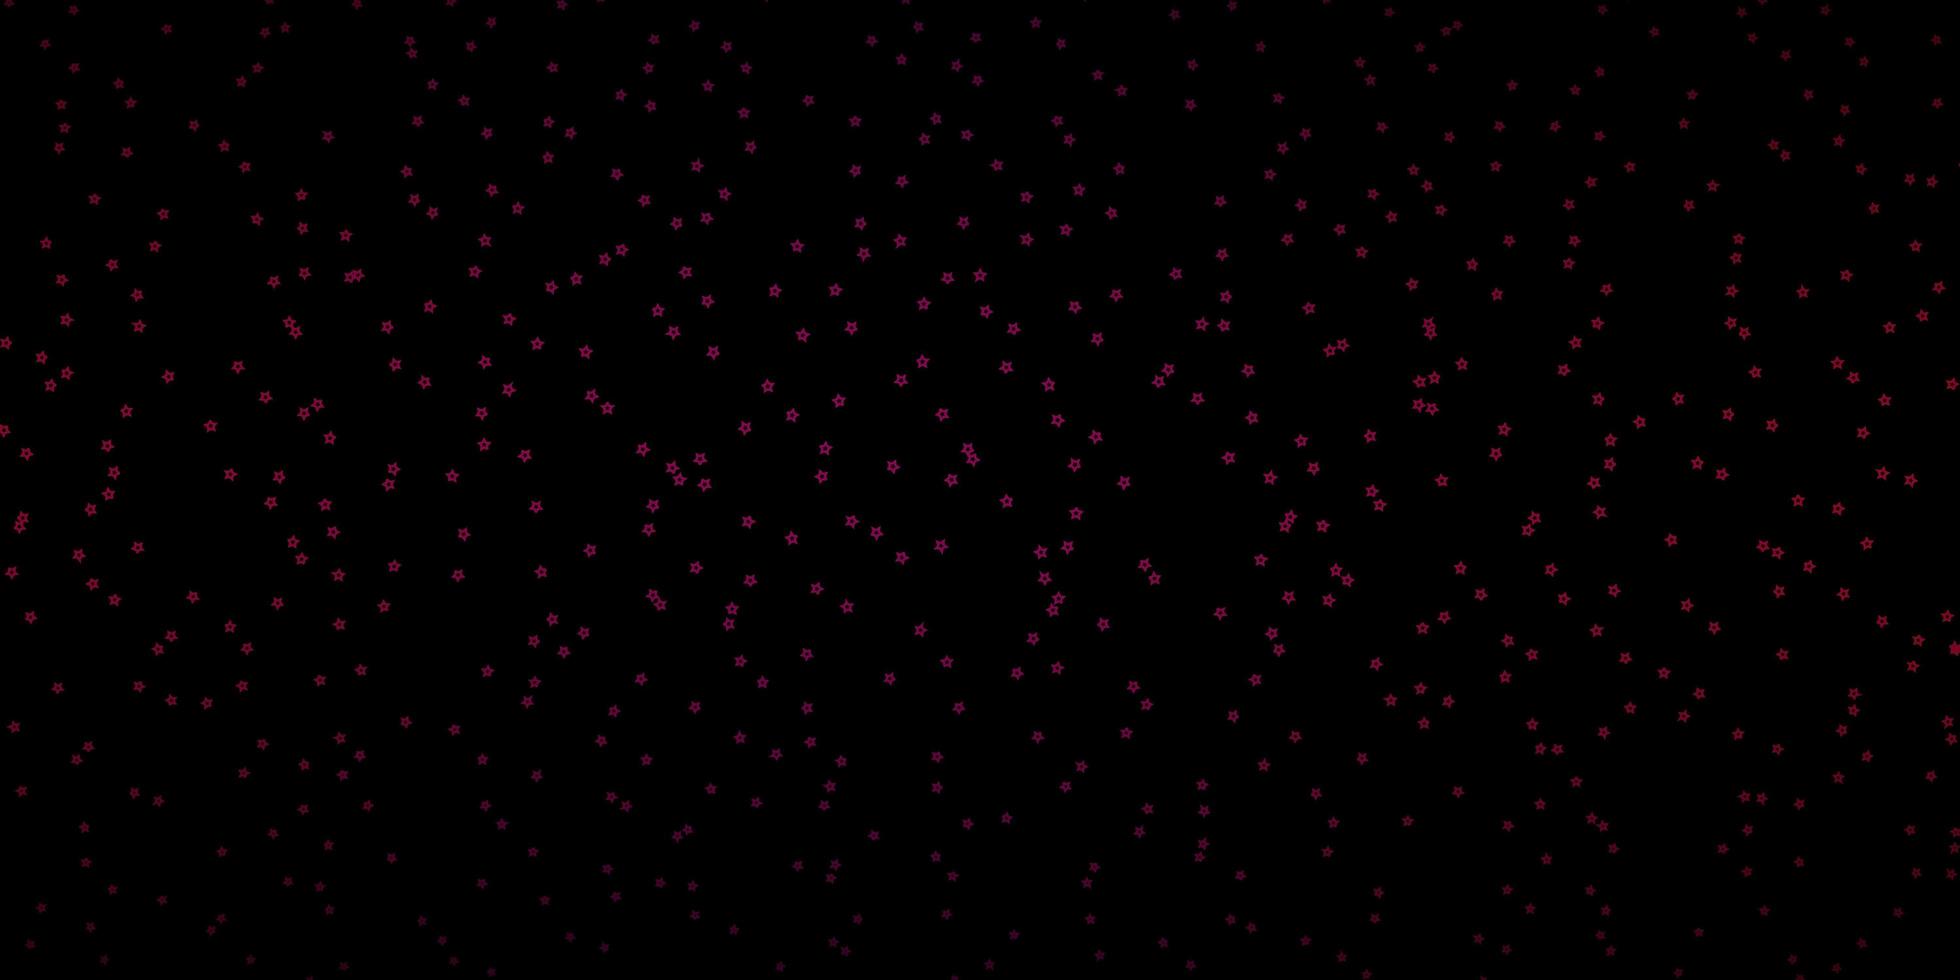 plantilla de vector de color rosa oscuro con estrellas de neón. ilustración decorativa con estrellas en plantilla abstracta. patrón para sitios web, páginas de destino.